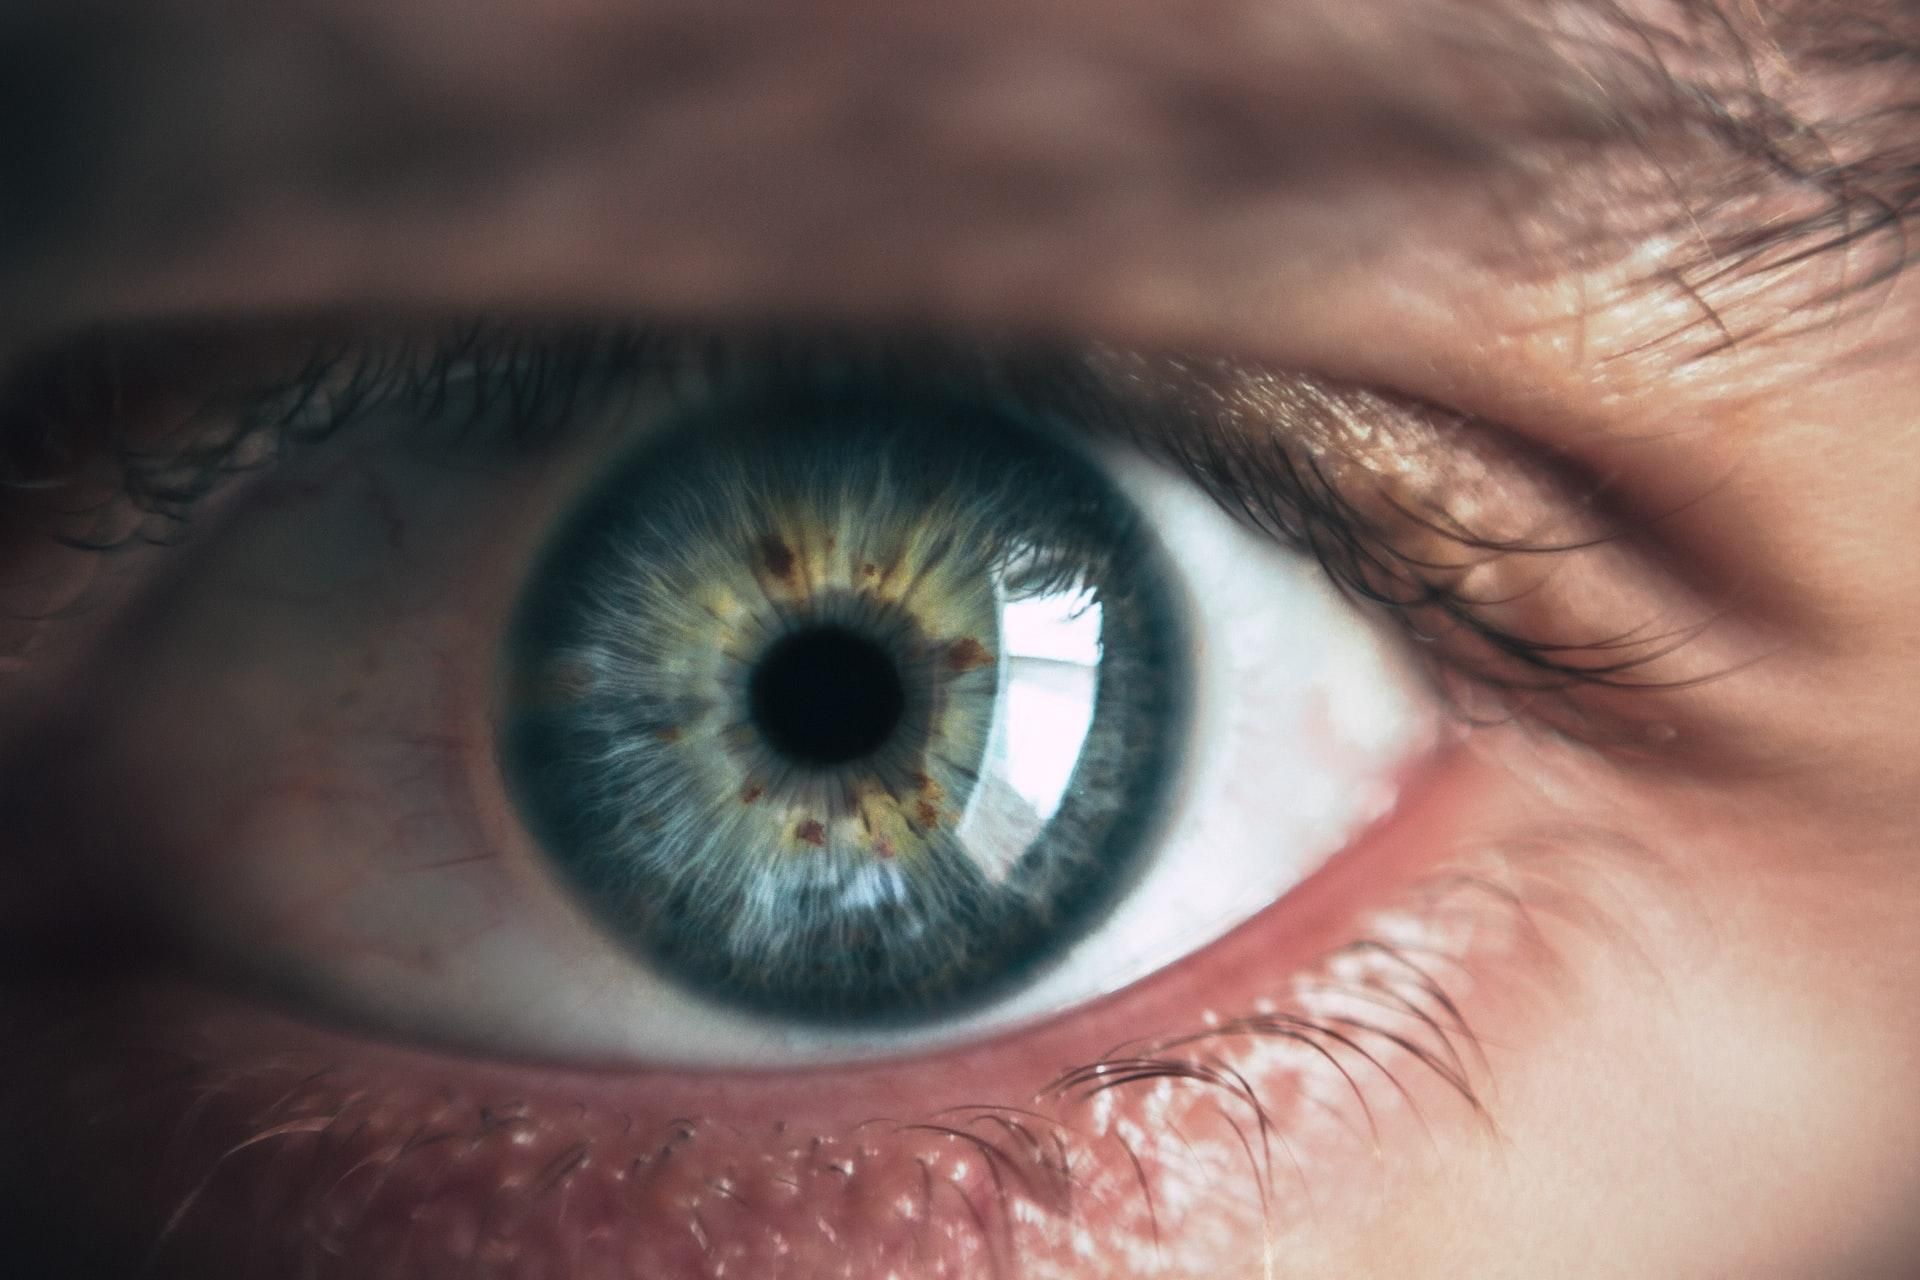 Минимальная доза нового препарата частично восстановила зрение людям с врожденной слепотой